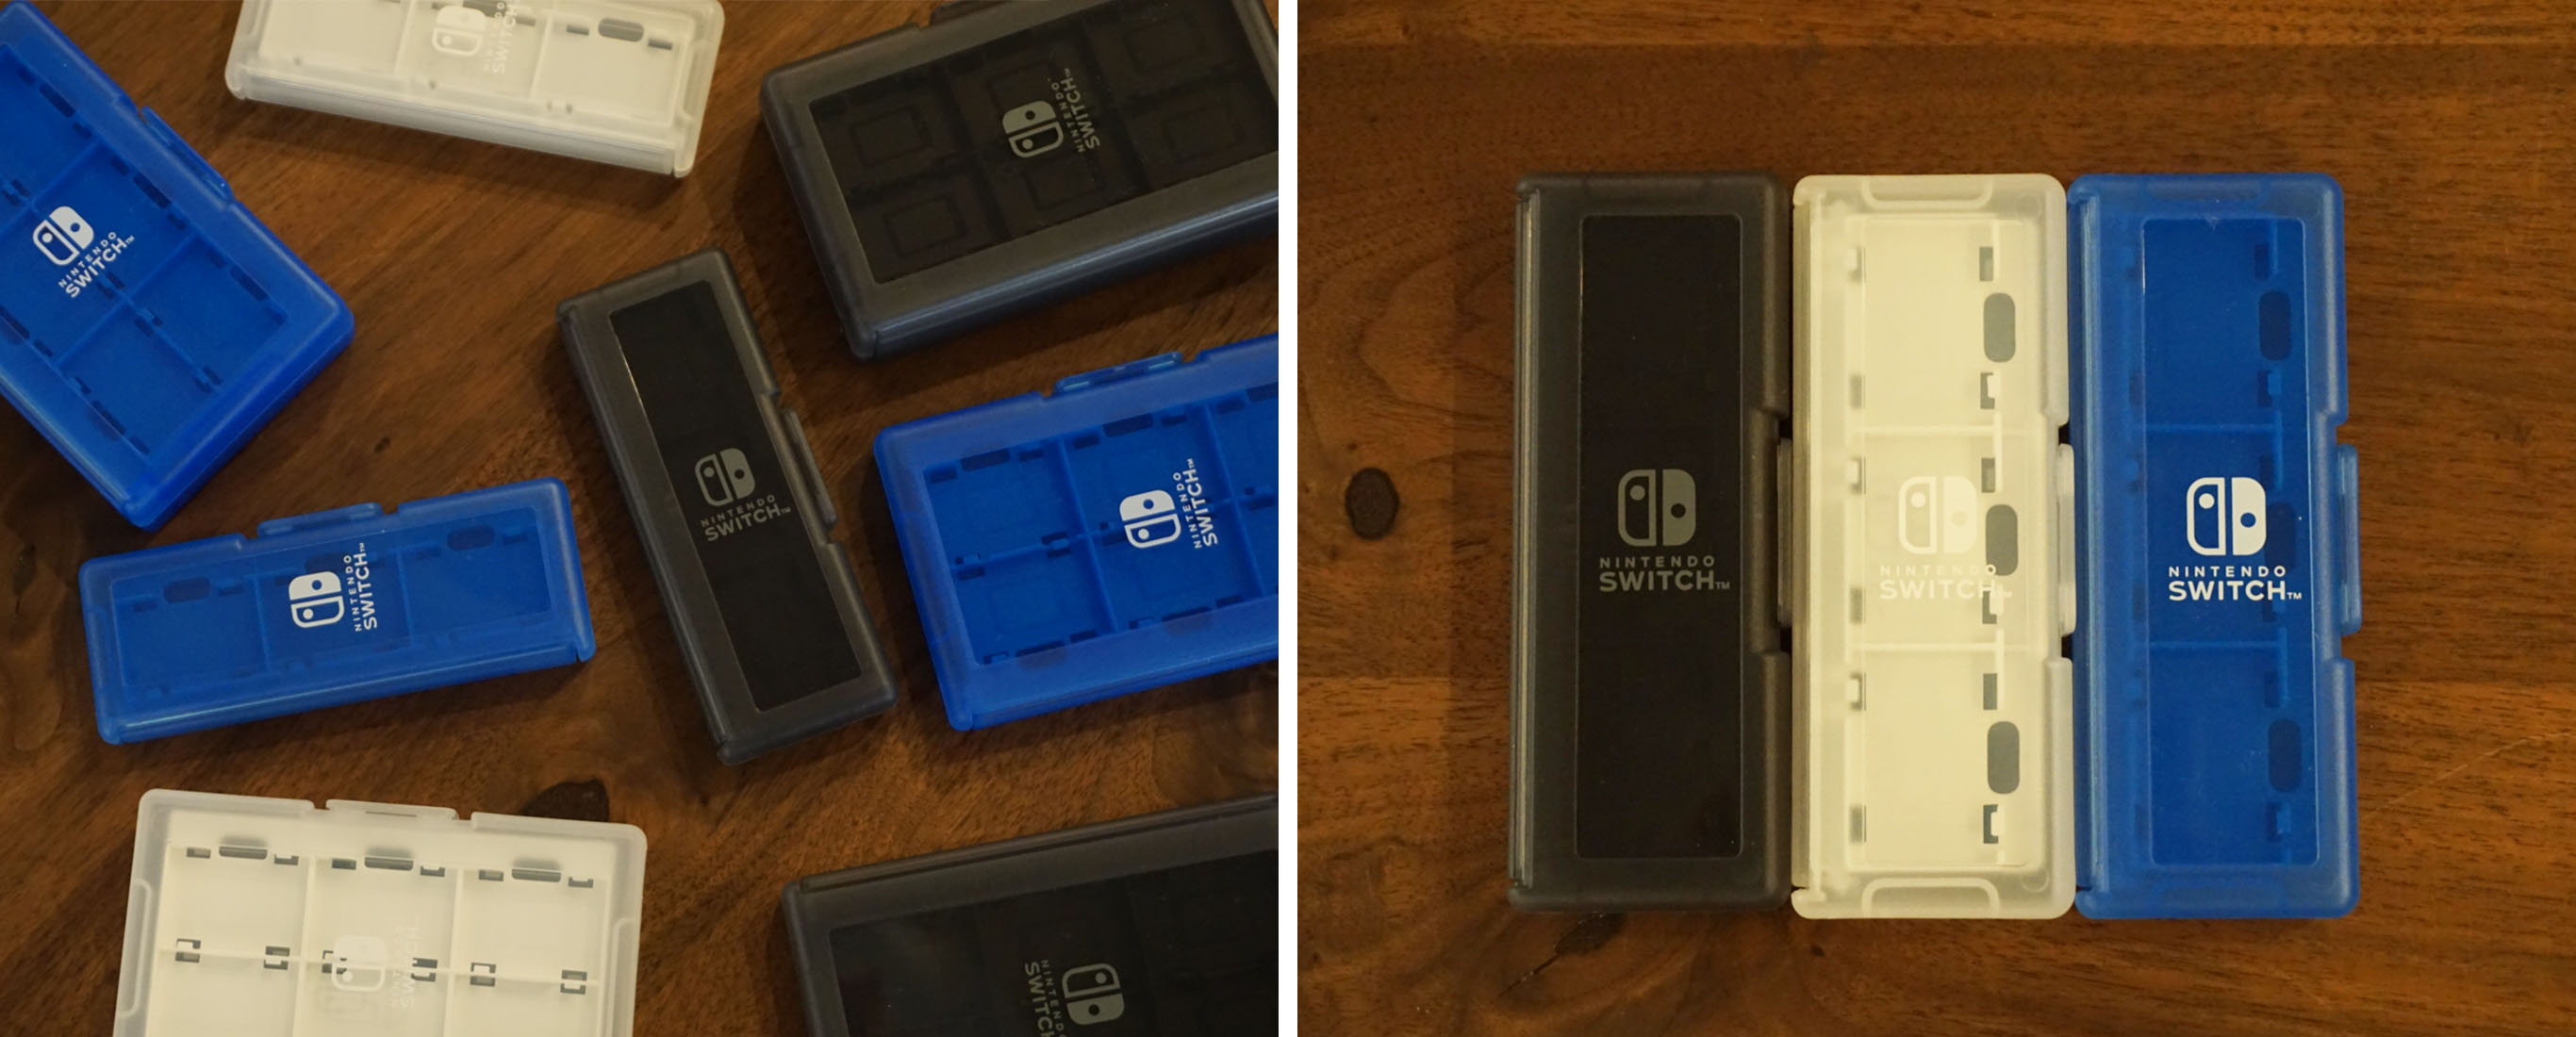 株式会社 HORI | カードケース6+2 for Nintendo Switch ブルー